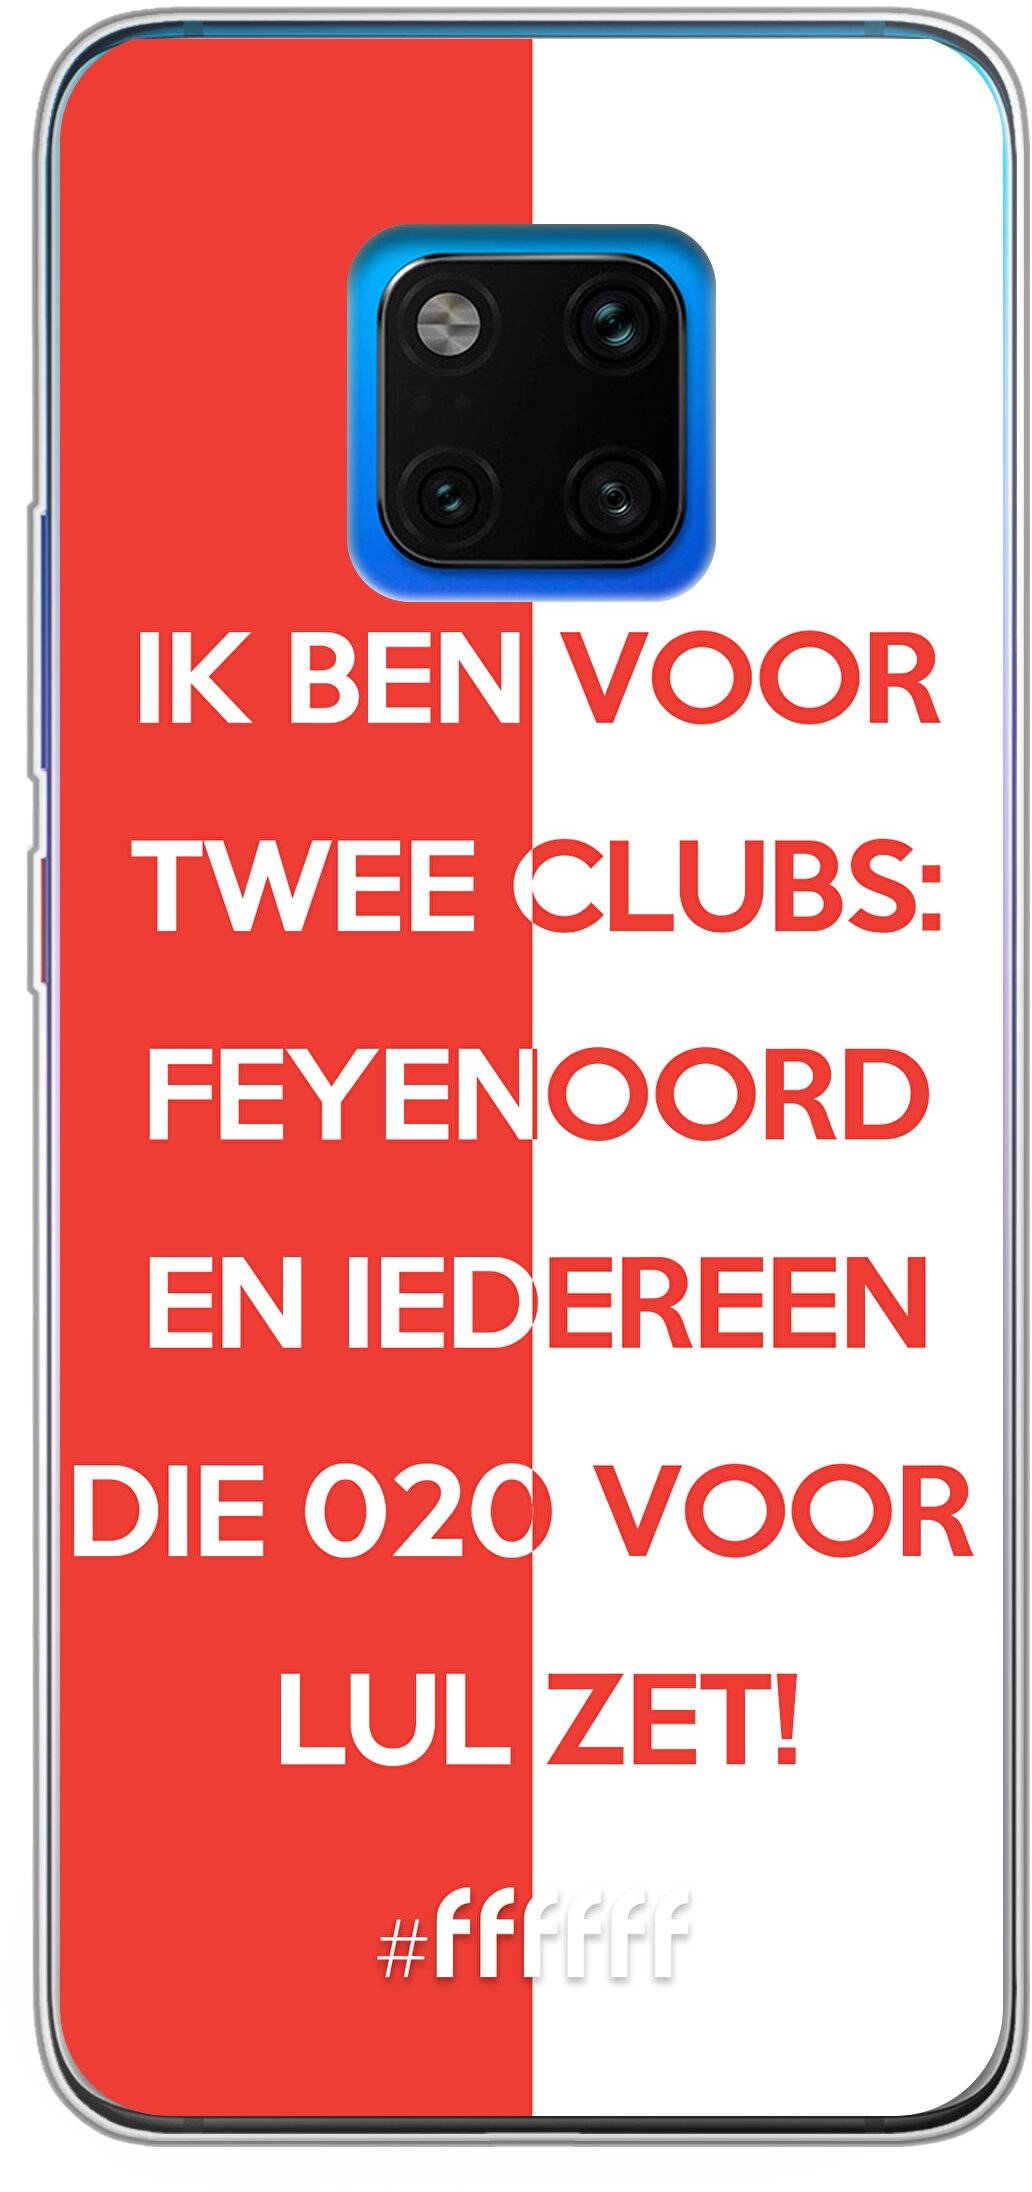 Feyenoord - Quote Mate 20 Pro